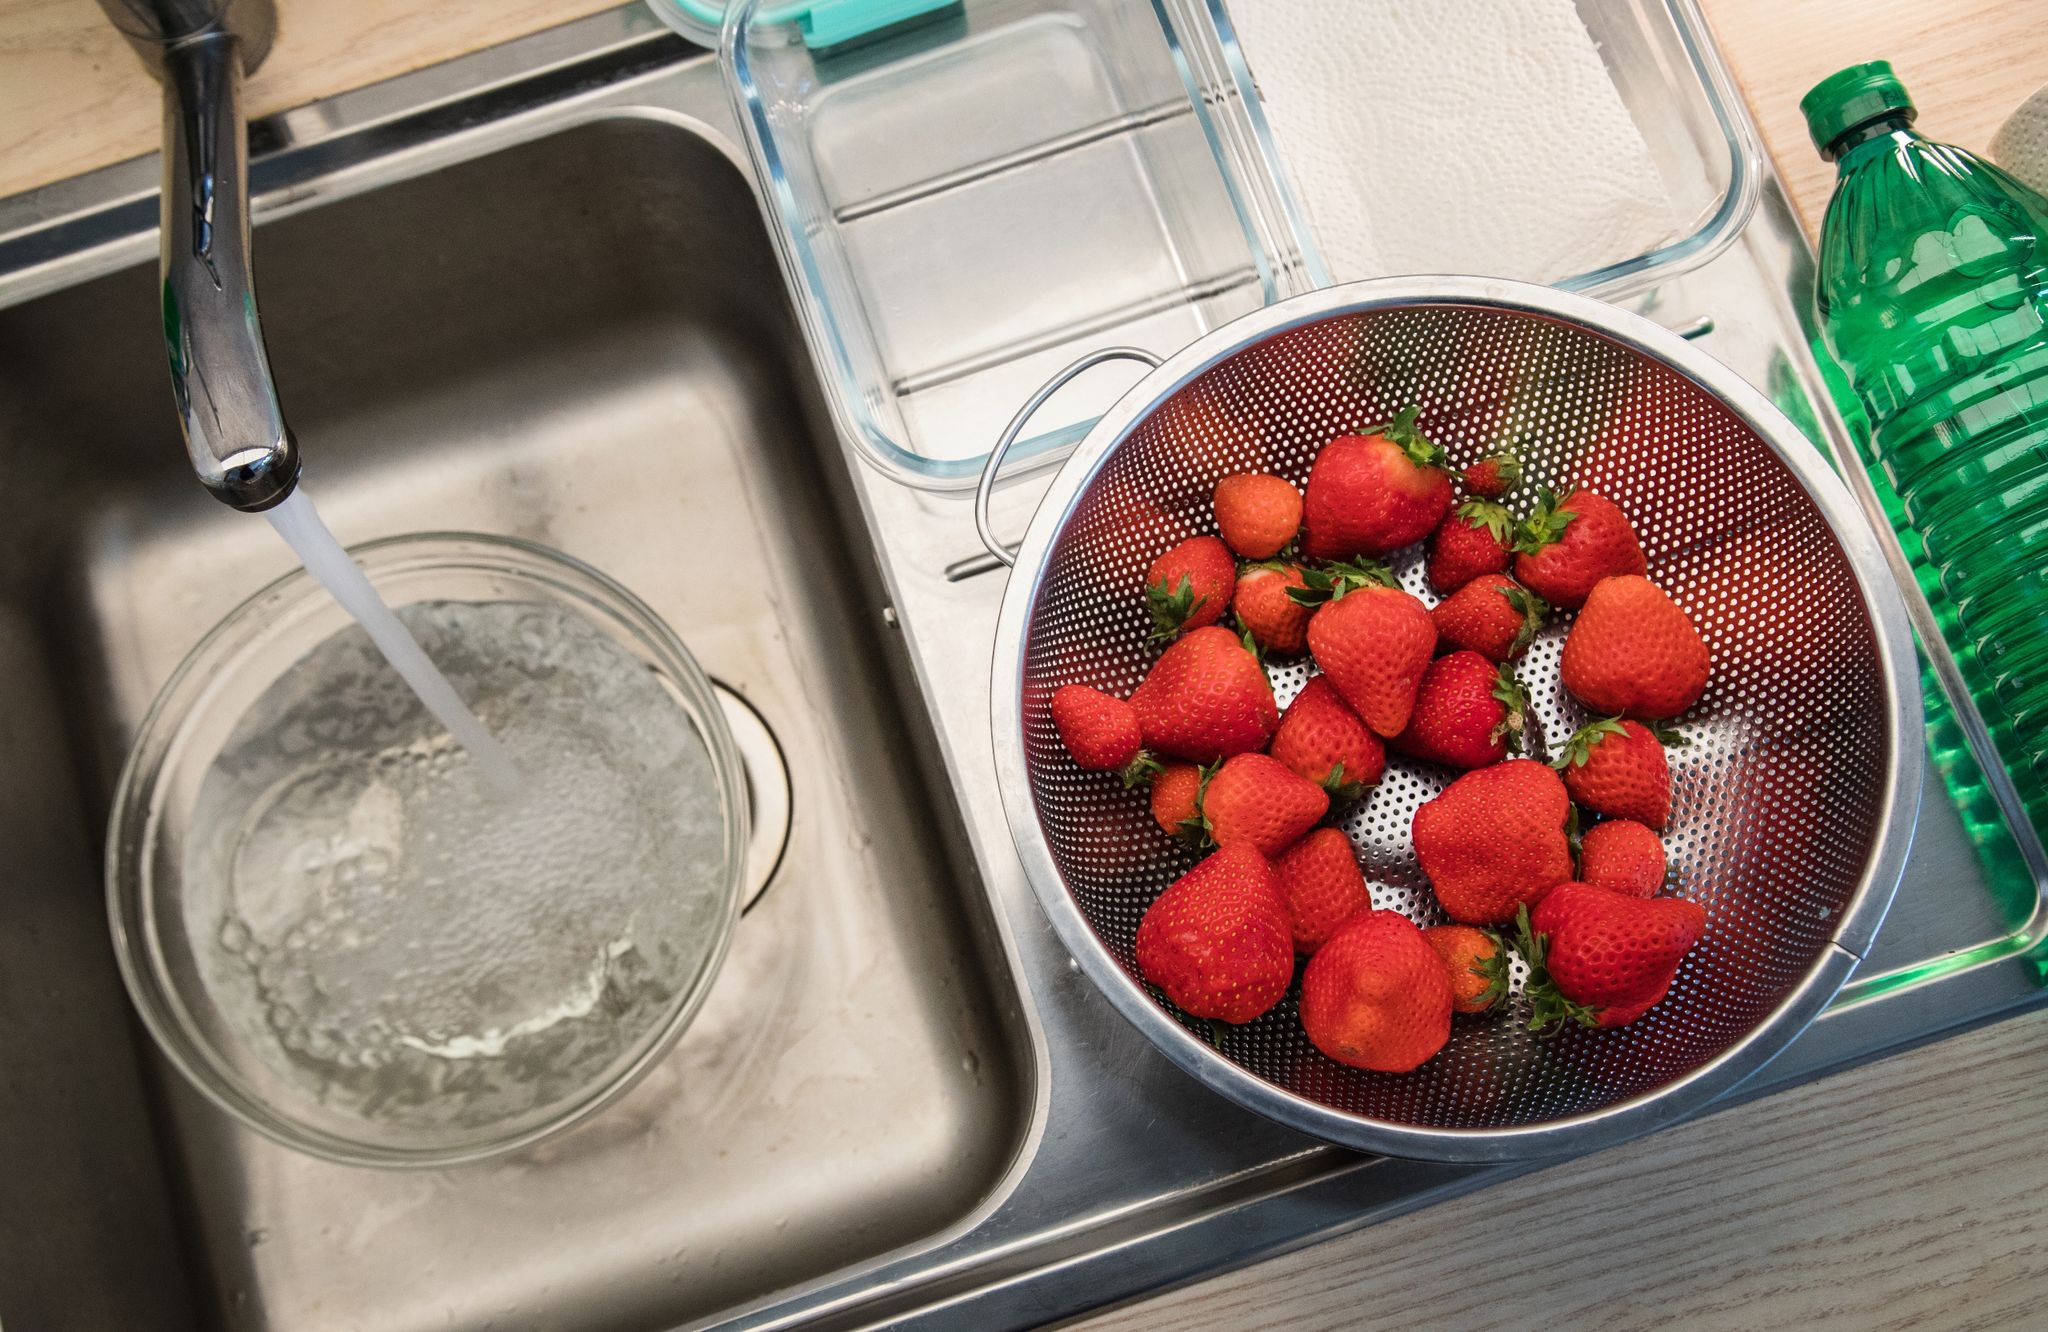 Man braucht: Erdbeeren, Wasser, Essig, Papiertücher und ein flaches Behältnis.